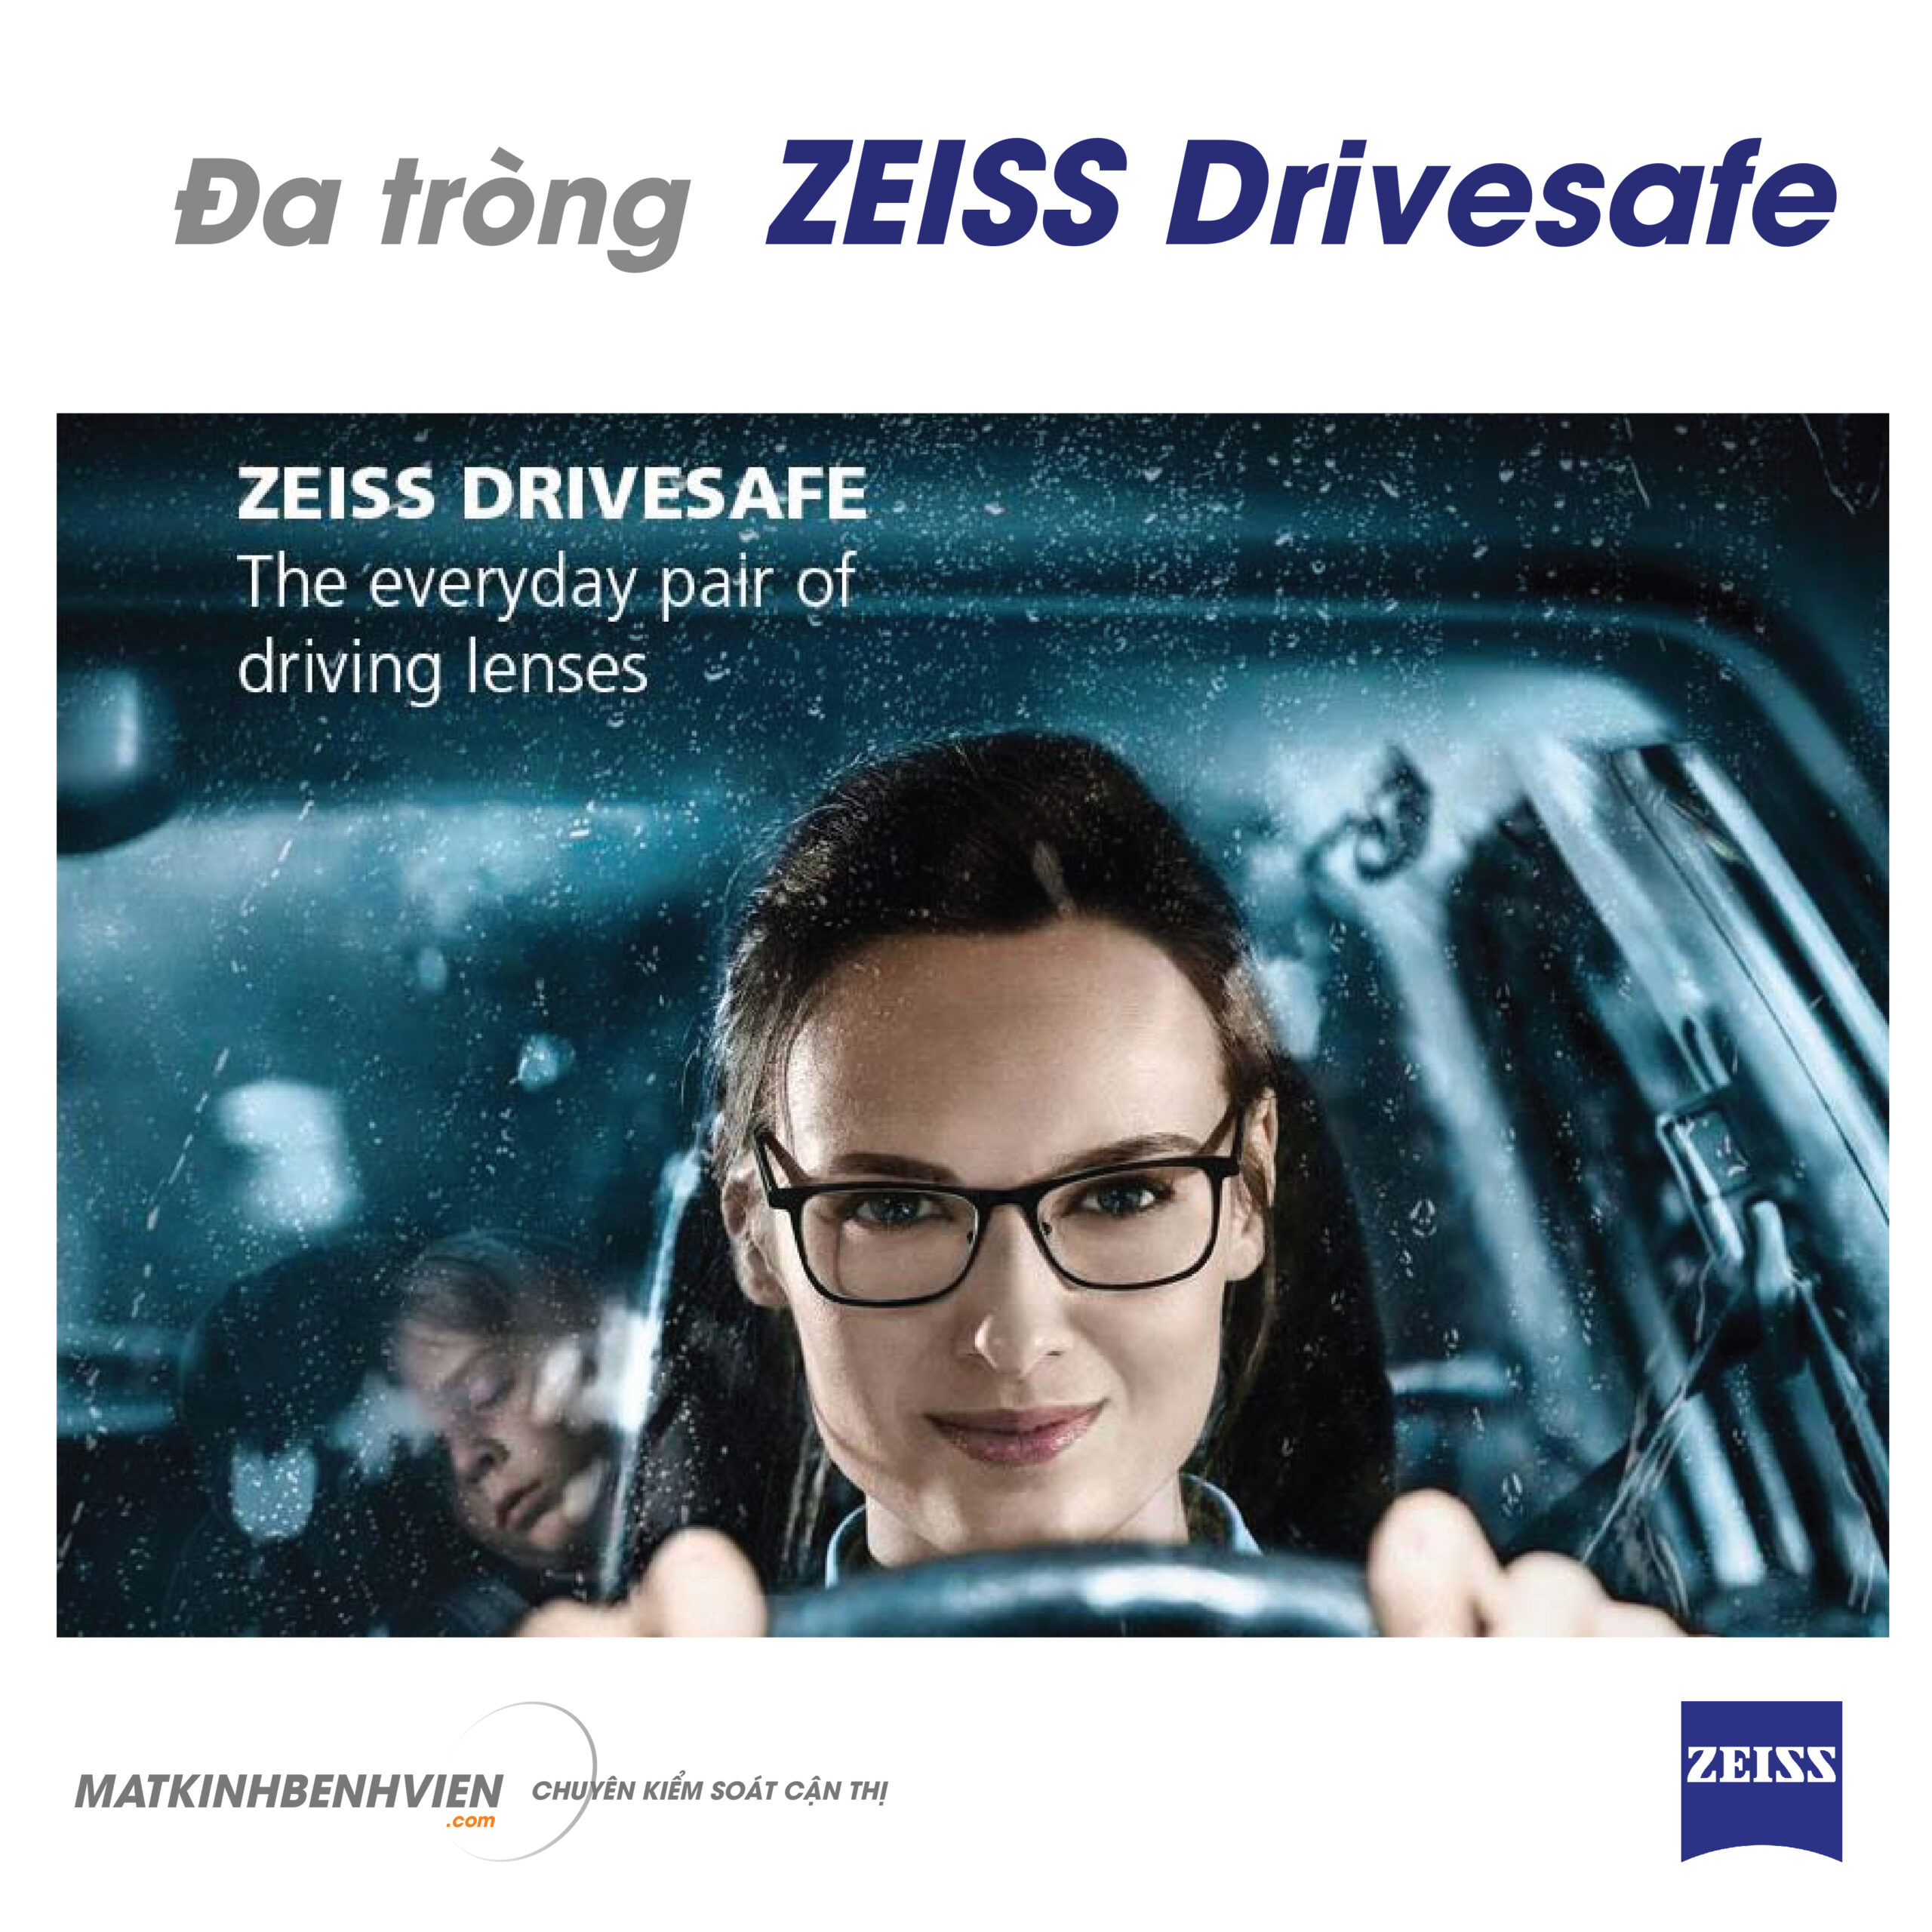 Zeiss Drivesafe